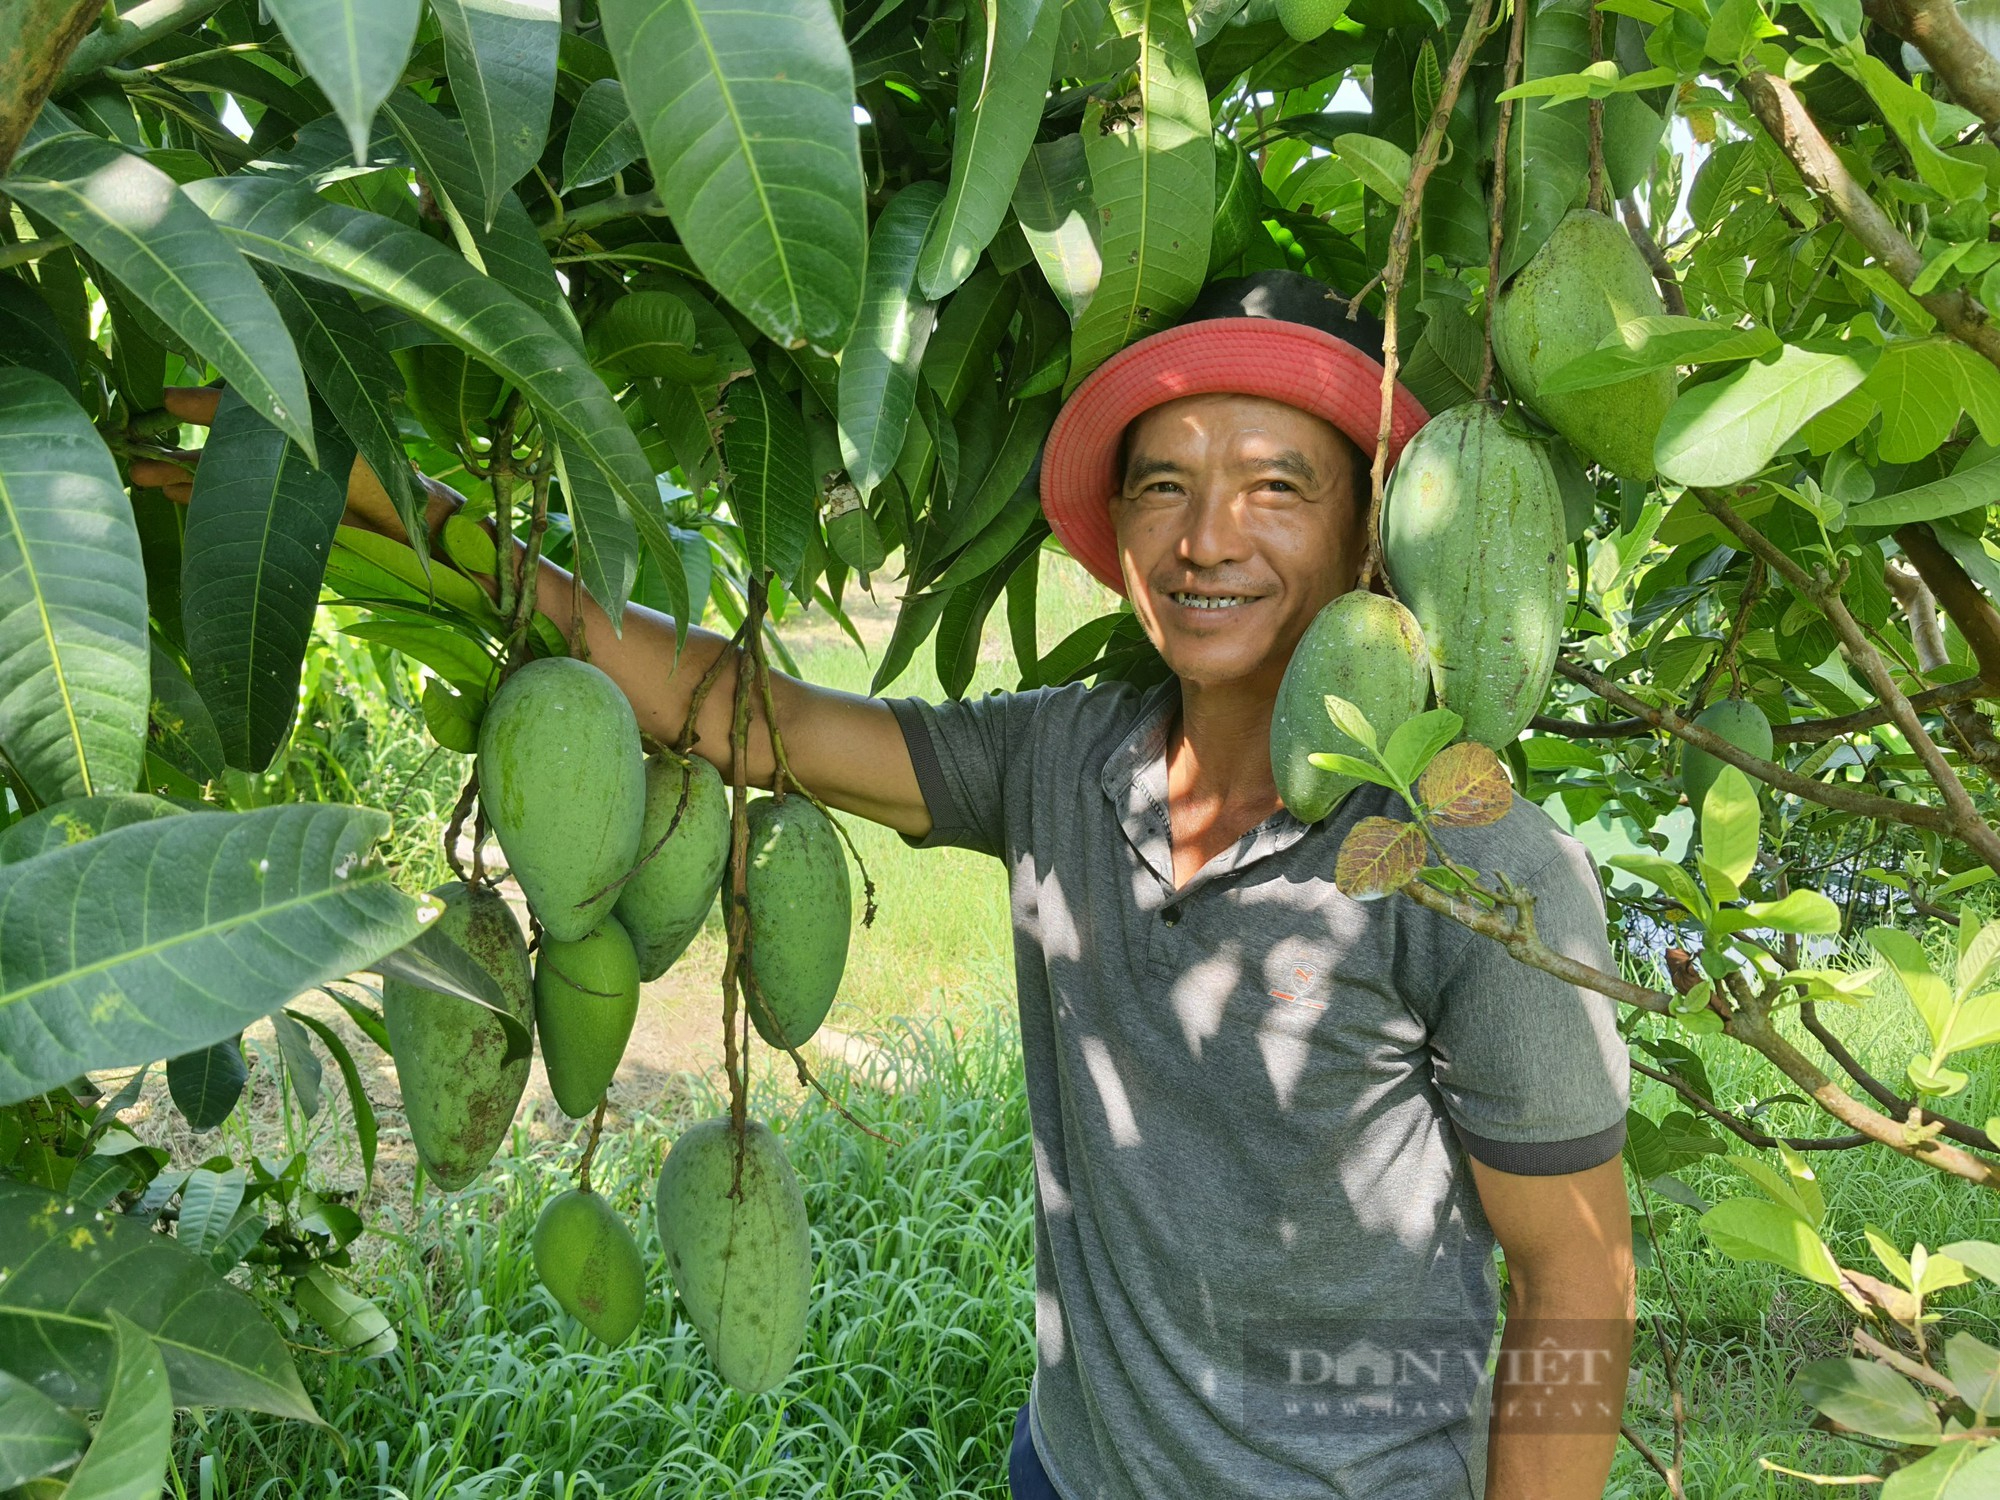 Quảng Nam: Đại Lộc hái “quả ngọt” từ mô hình chuyển đổi cơ cấu cây trồng phù hợp - Ảnh 2.